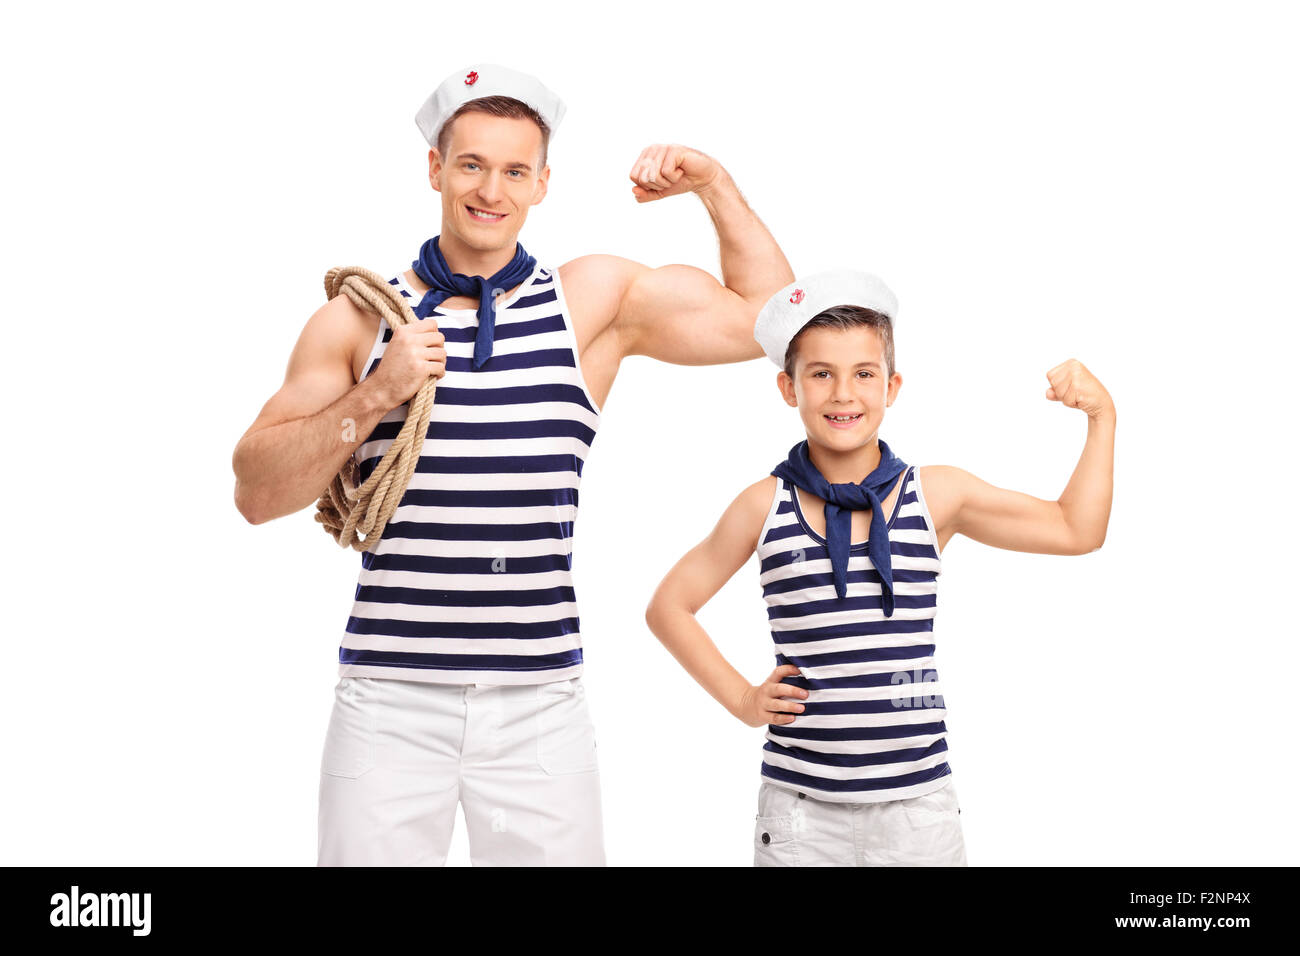 Giovane uomo e un bambino in sailor uniformi che mostra bicipite e guardando la telecamera isolata su sfondo bianco Foto Stock